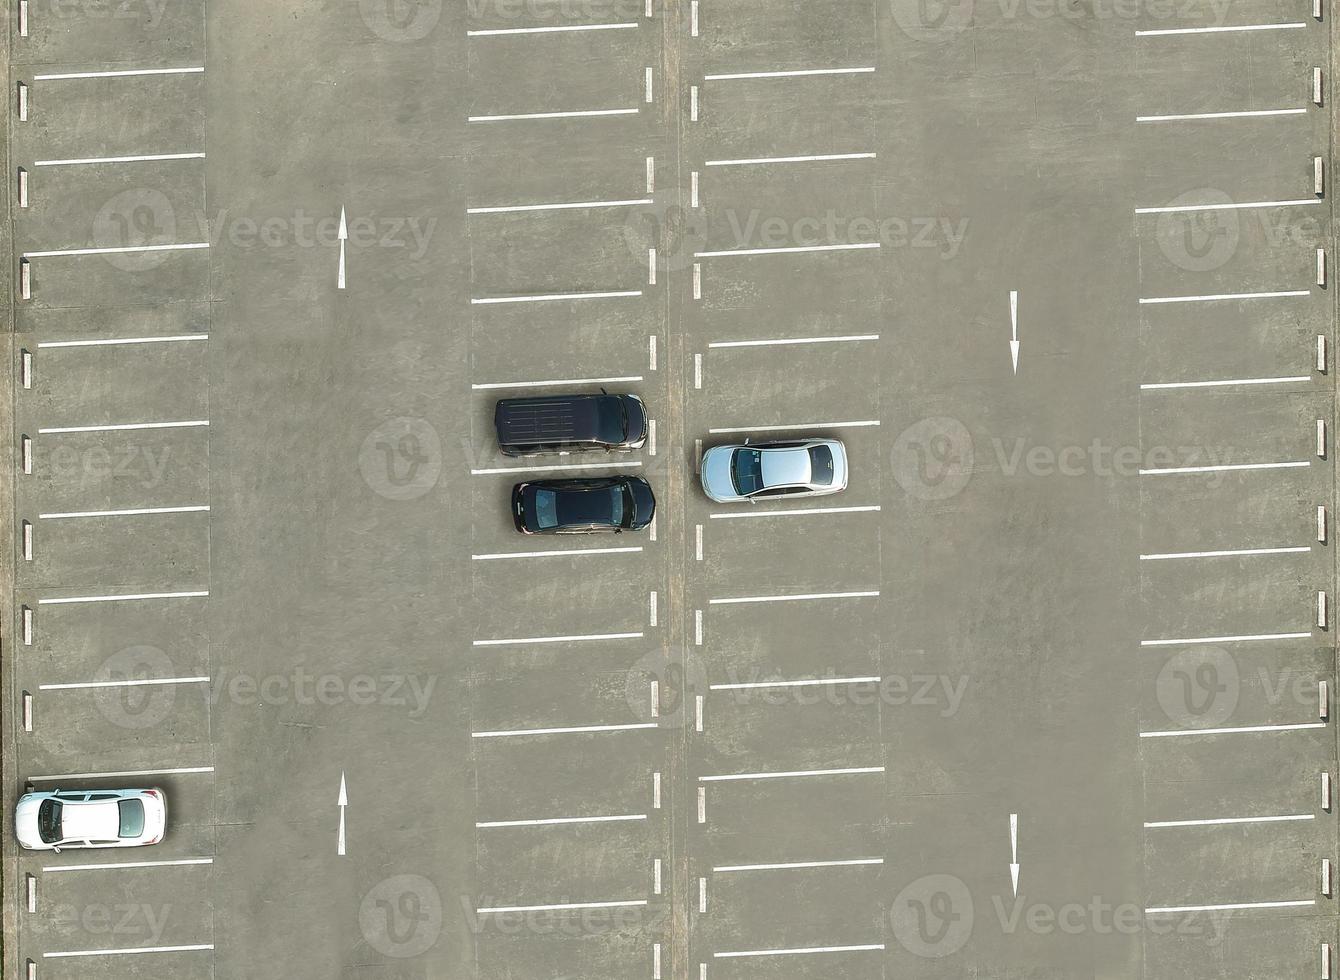 uitzicht vanaf drone boven lege parkeerplaatsen, luchtfoto foto